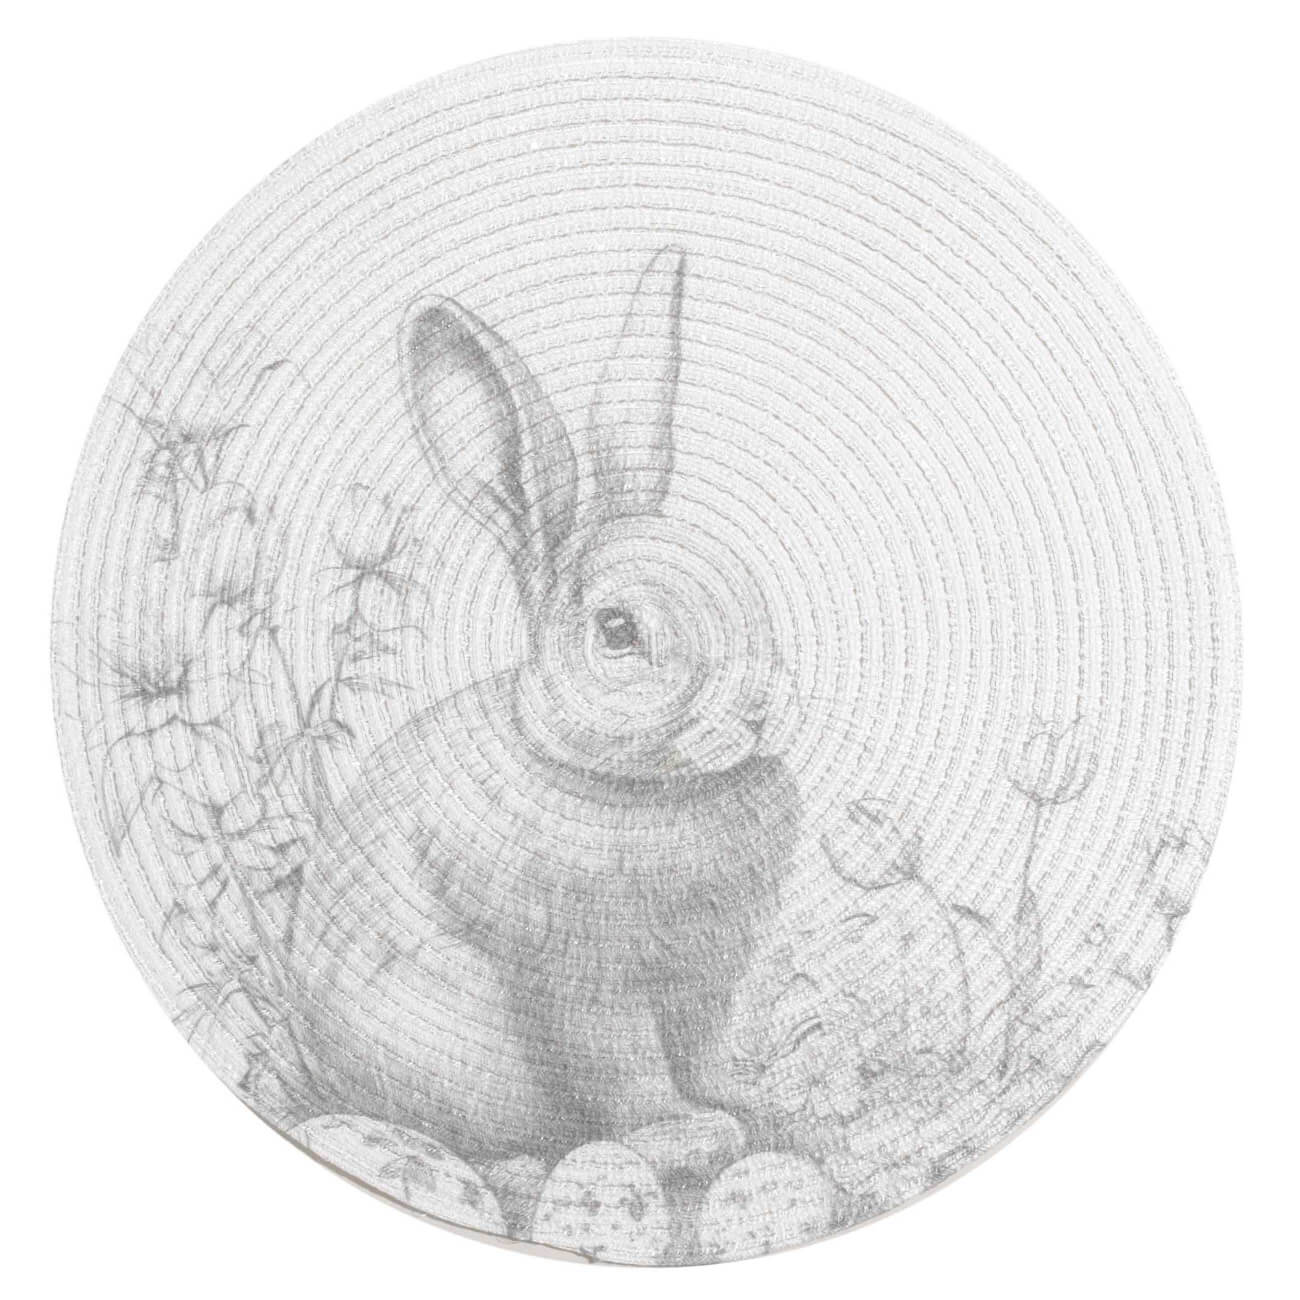 Салфетка под приборы, 38 см, полиэстер, круглая, белая, Графичный кролик, Rotary print салфетка под приборы 38 см полиэстер круглая белая графичный кролик rotary print